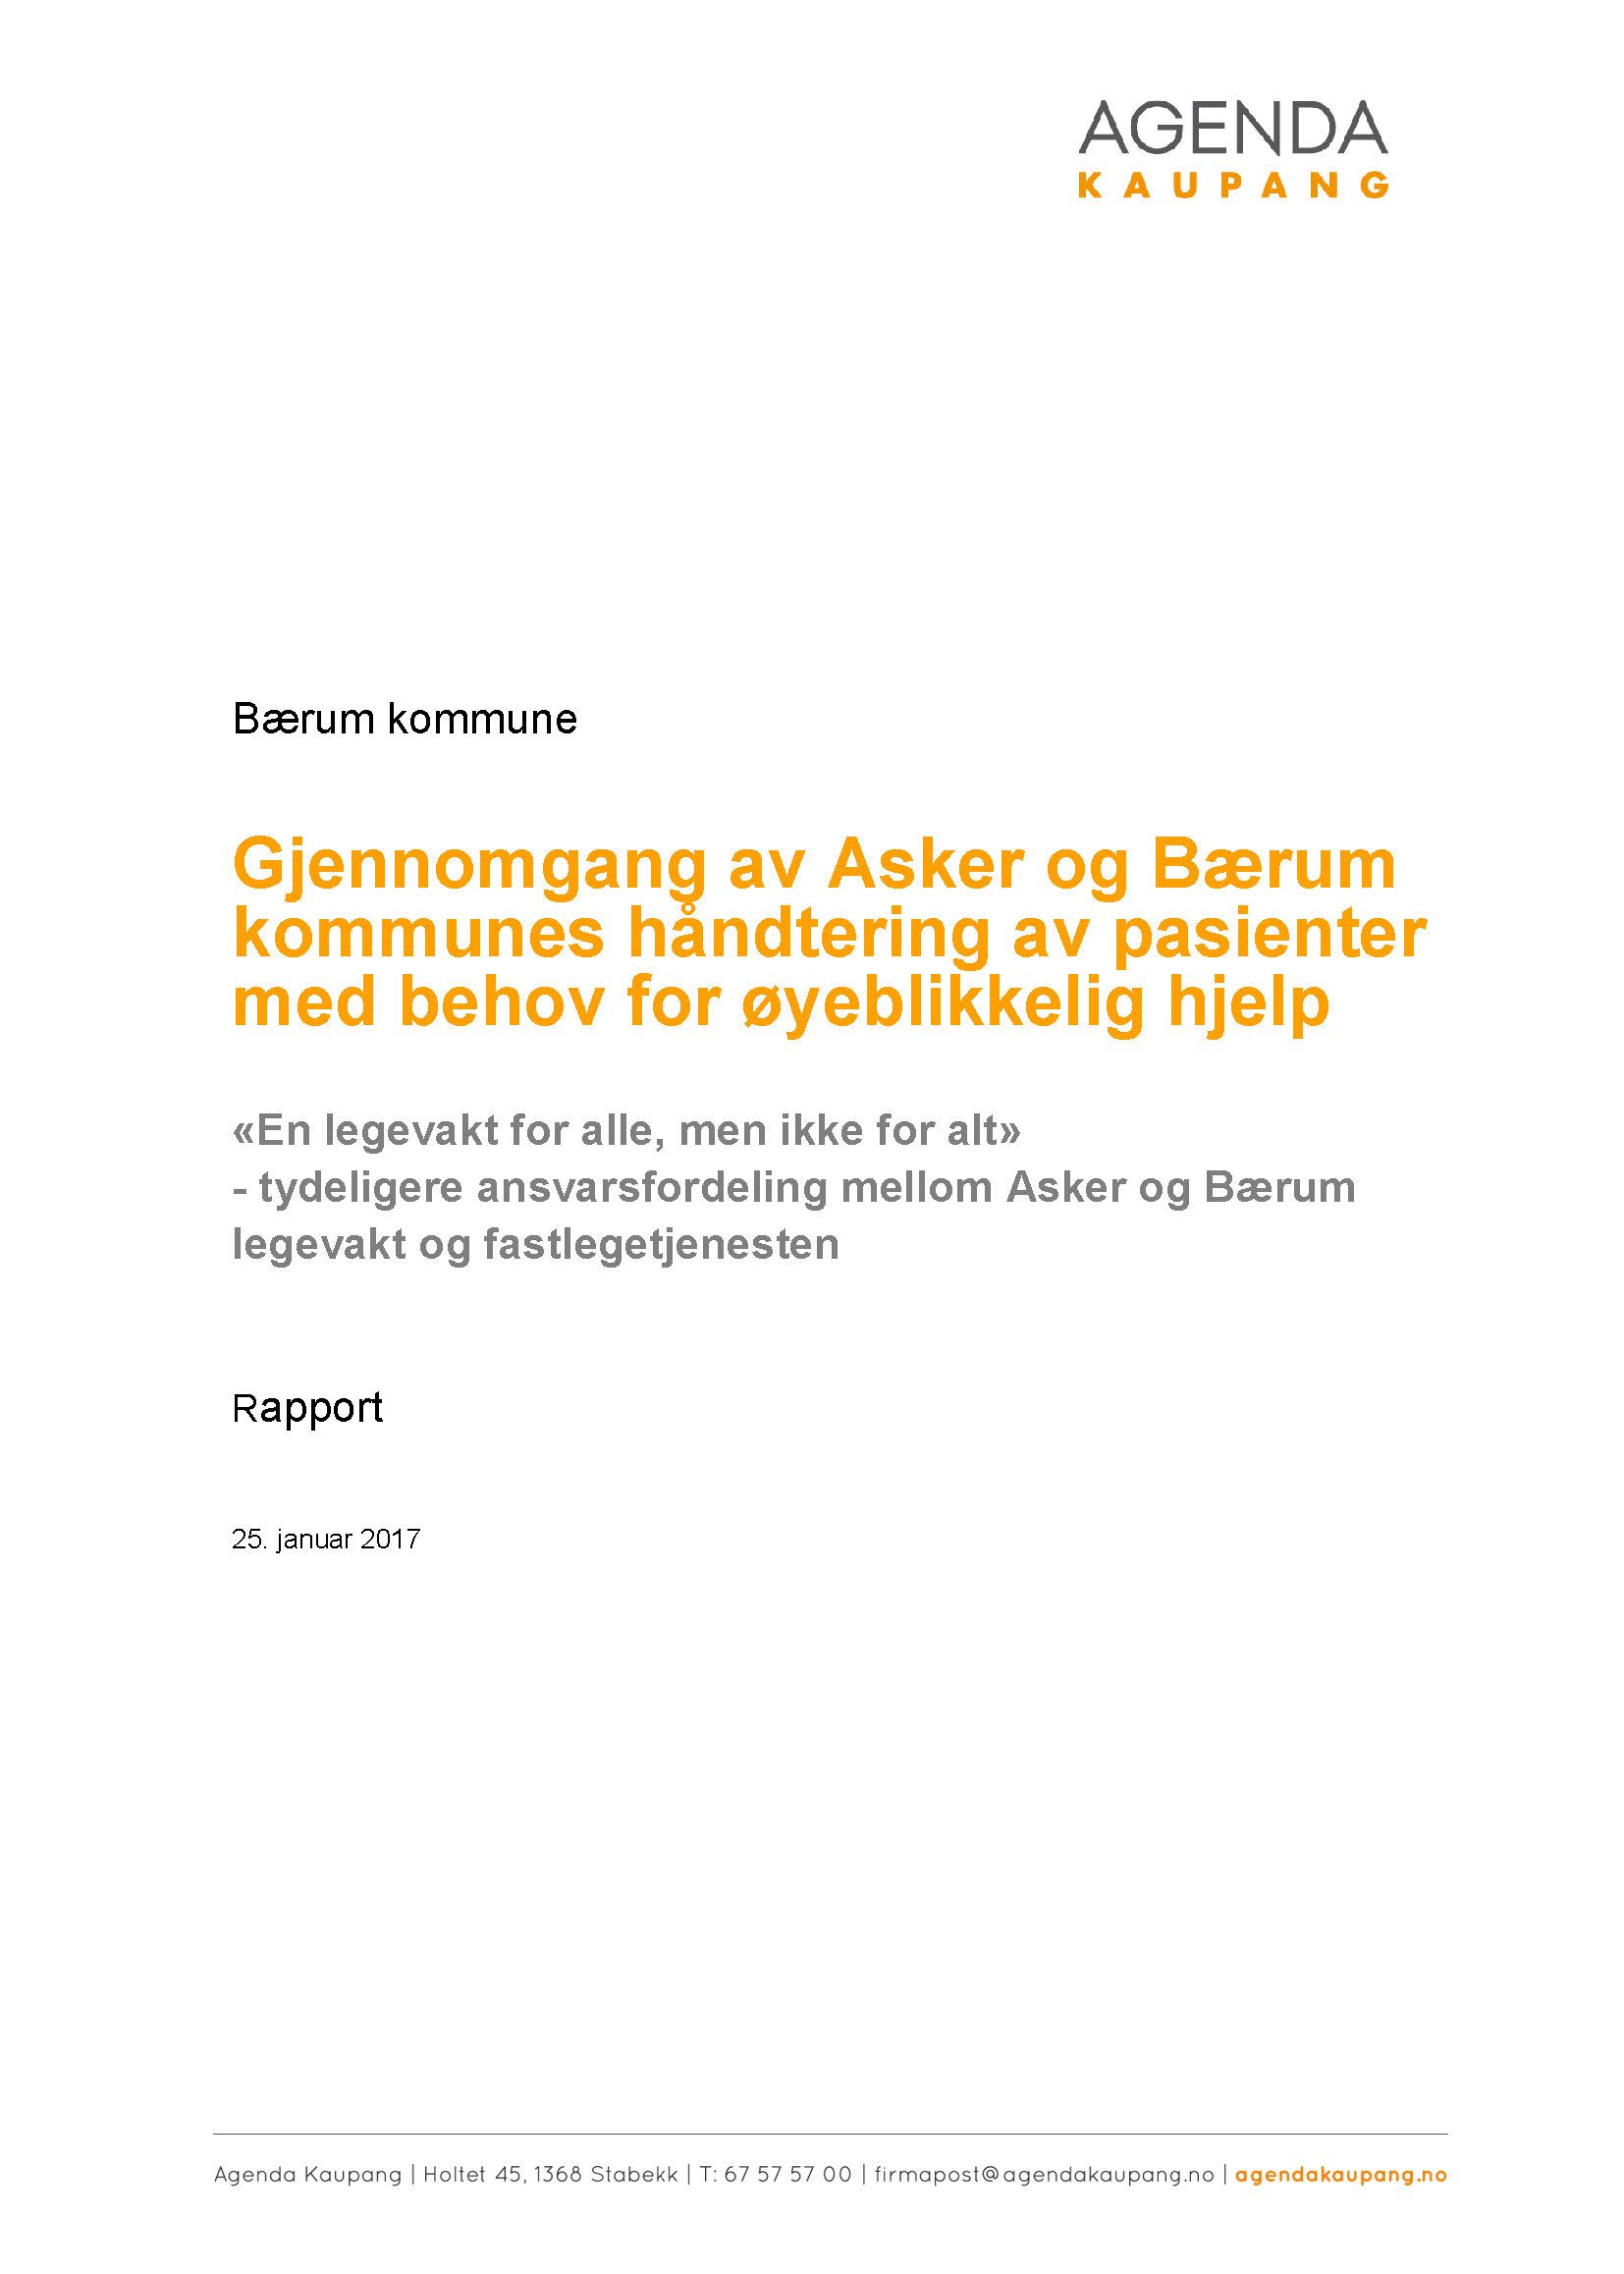 Gjennomgang av Asker og Bærum kommunes håndtering av pasienter med behov for øyeblikkelig hjelp